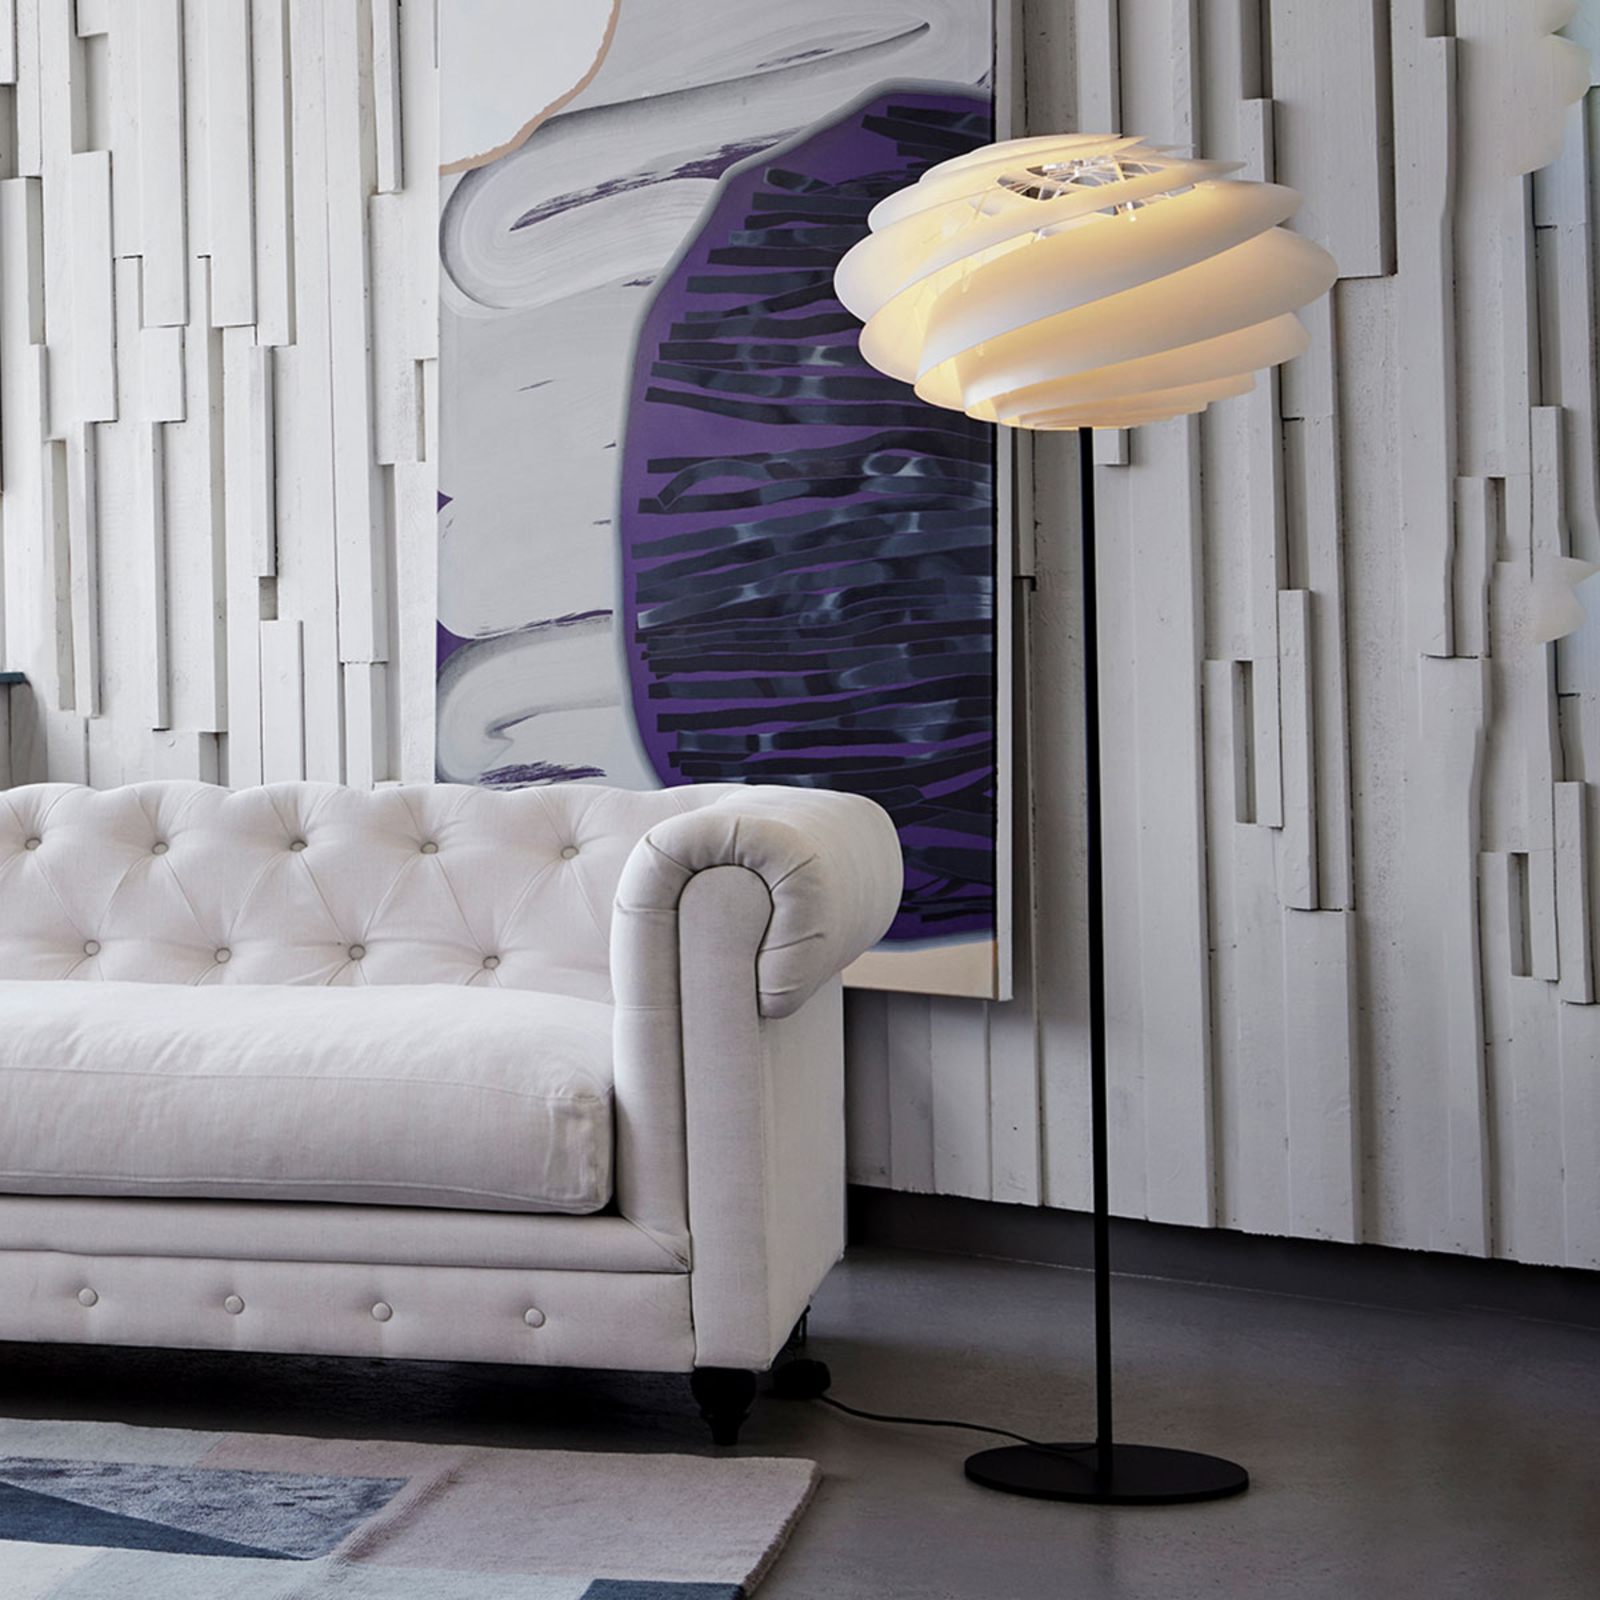 LE KLINT Swirl biela dizajnová stojaca lampa